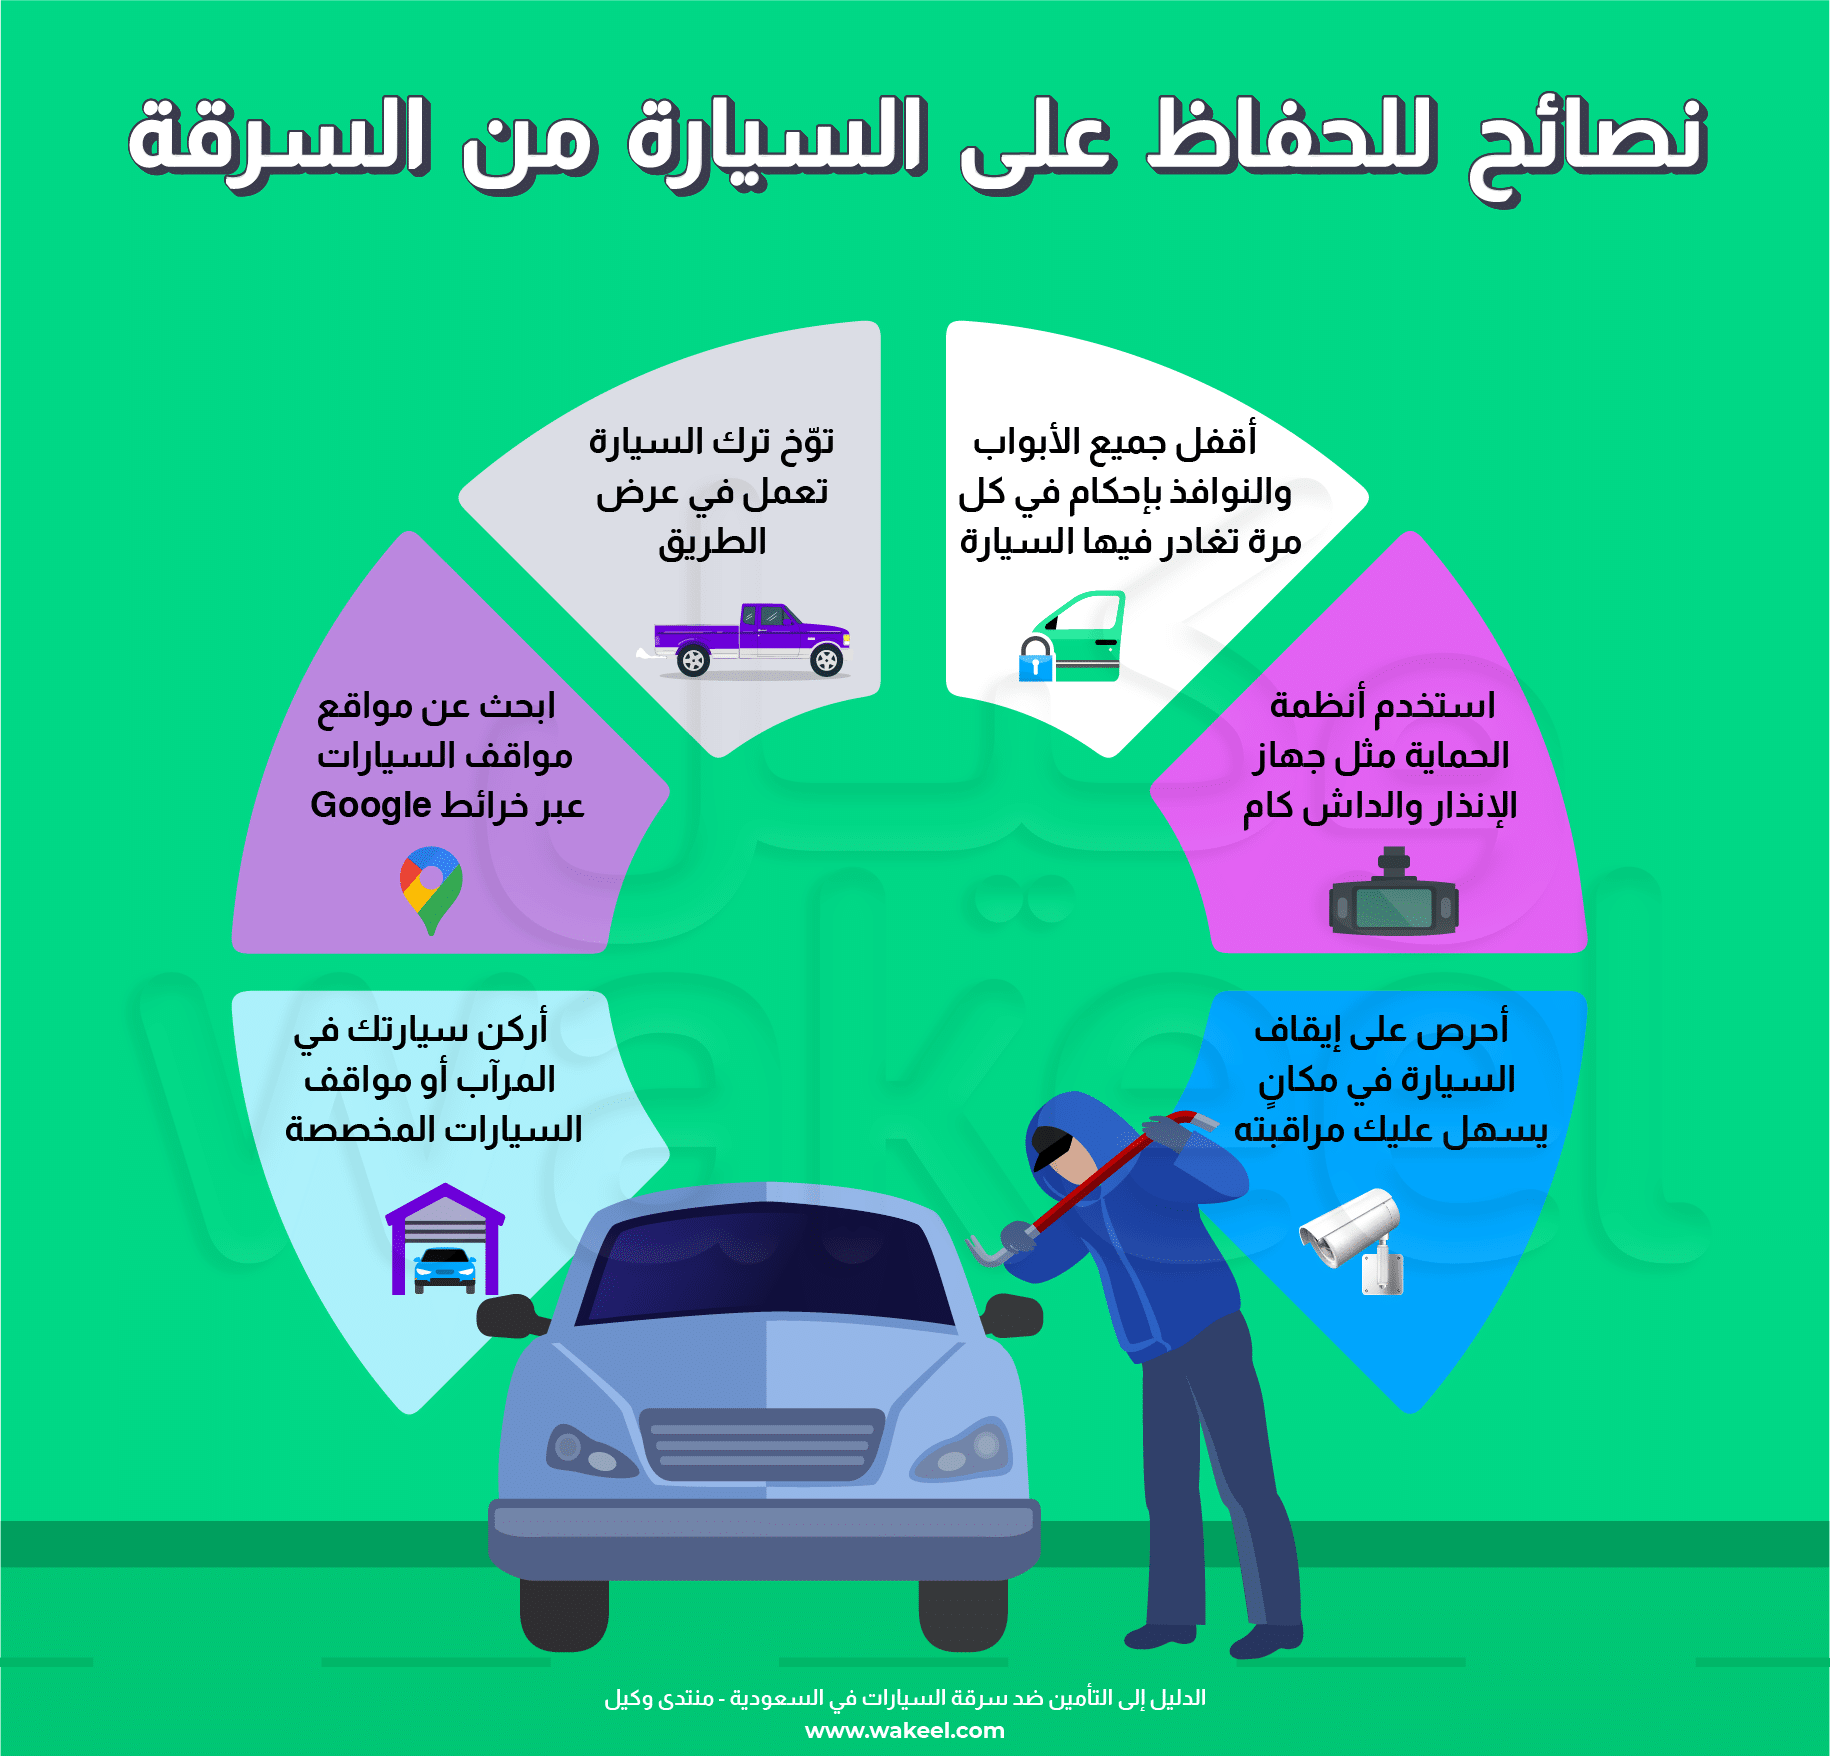 إنفوجرافيك يوضح نصائح للوقاية من سرقة السيارات في المملكة العربية السعودية، بما في ذلك مواقف آمنة وأنظمة إنذار ووسائل للوقاية من السرقة.